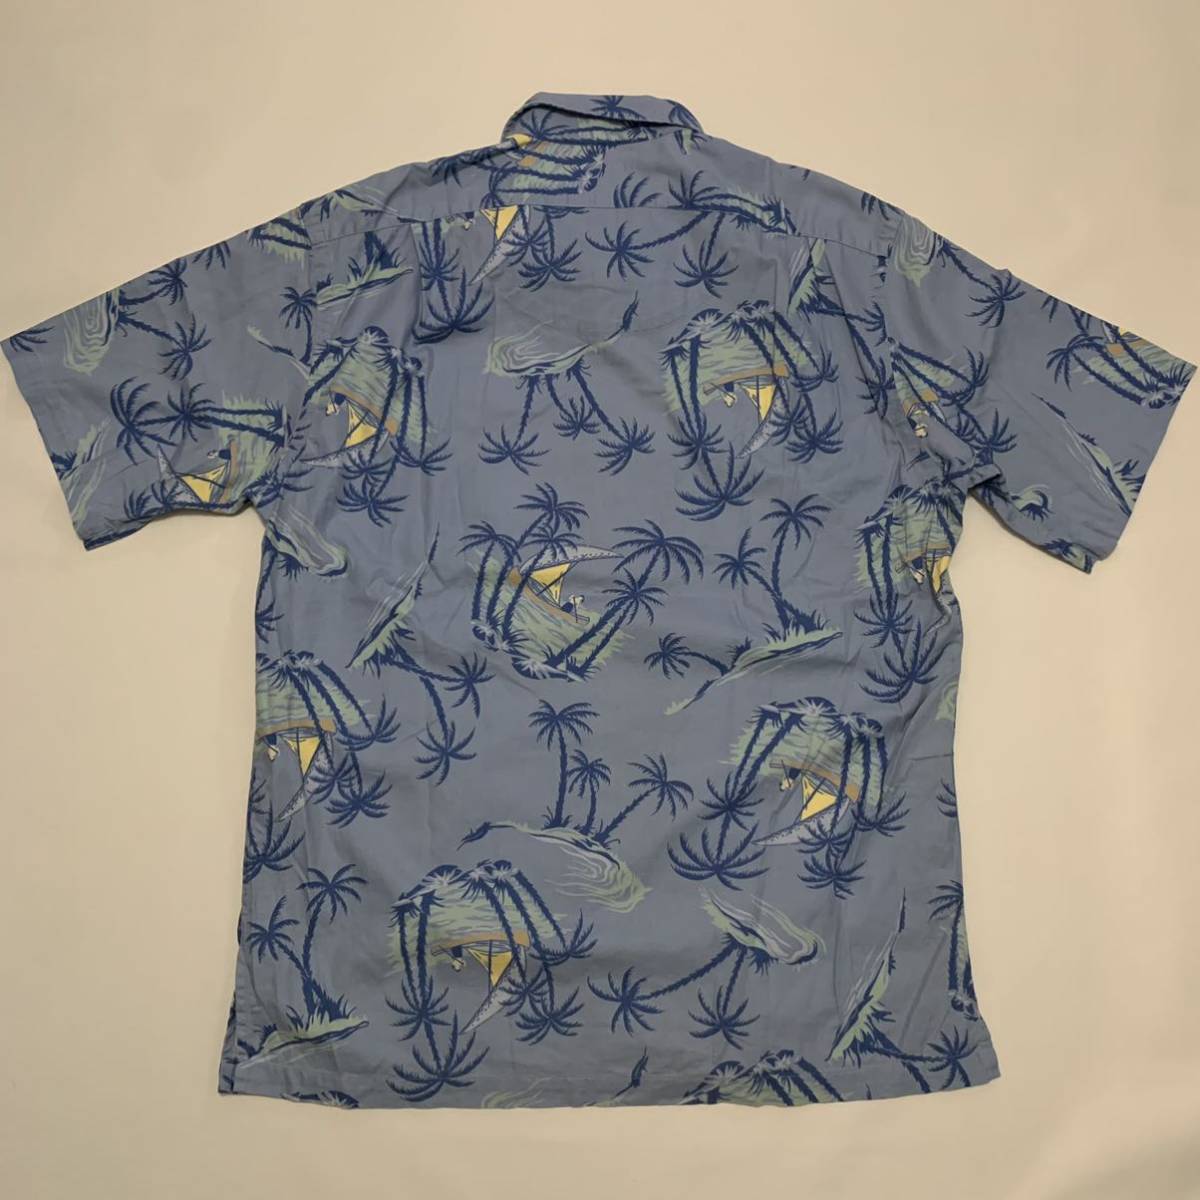 90s Polo Ralph Lauren aro - общий рисунок . воротник рубашка / Vintage RRL POLO Country USA открытый цвет Гаваи 